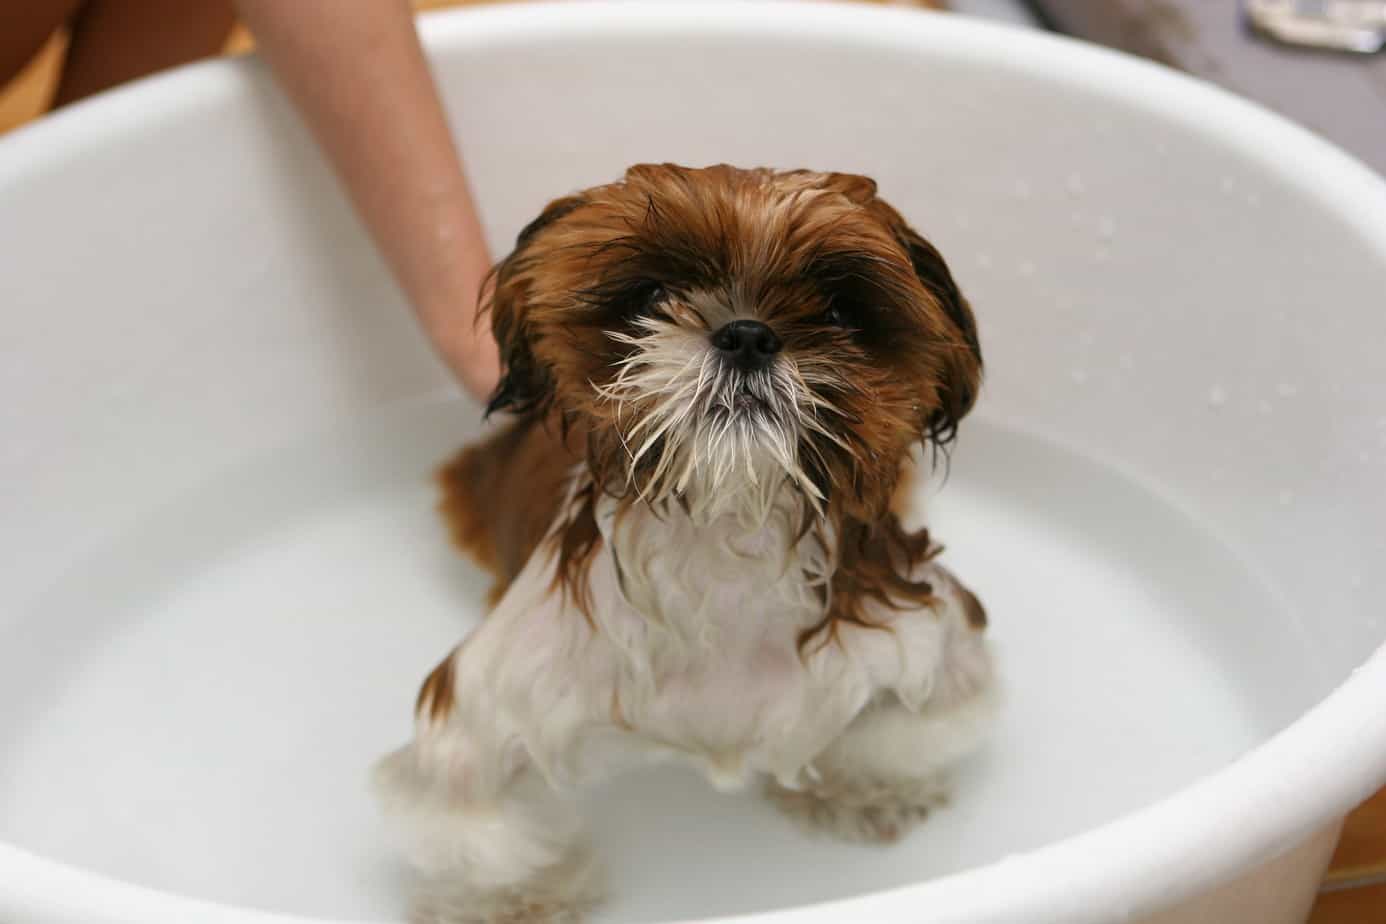 Dog getting a bath in a tub